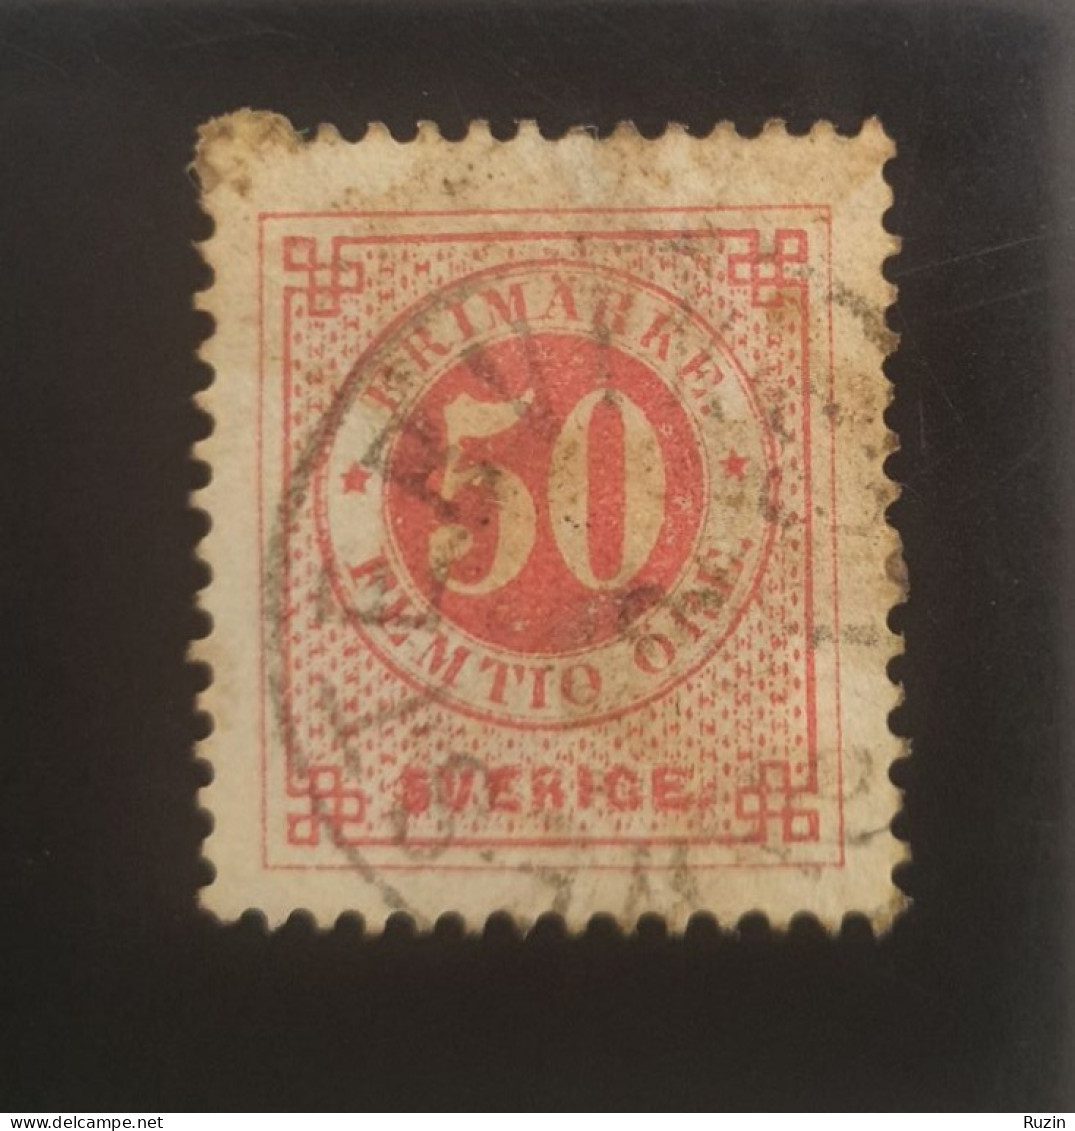 Sweden Stamp - Circle Type 50 öre - Usati